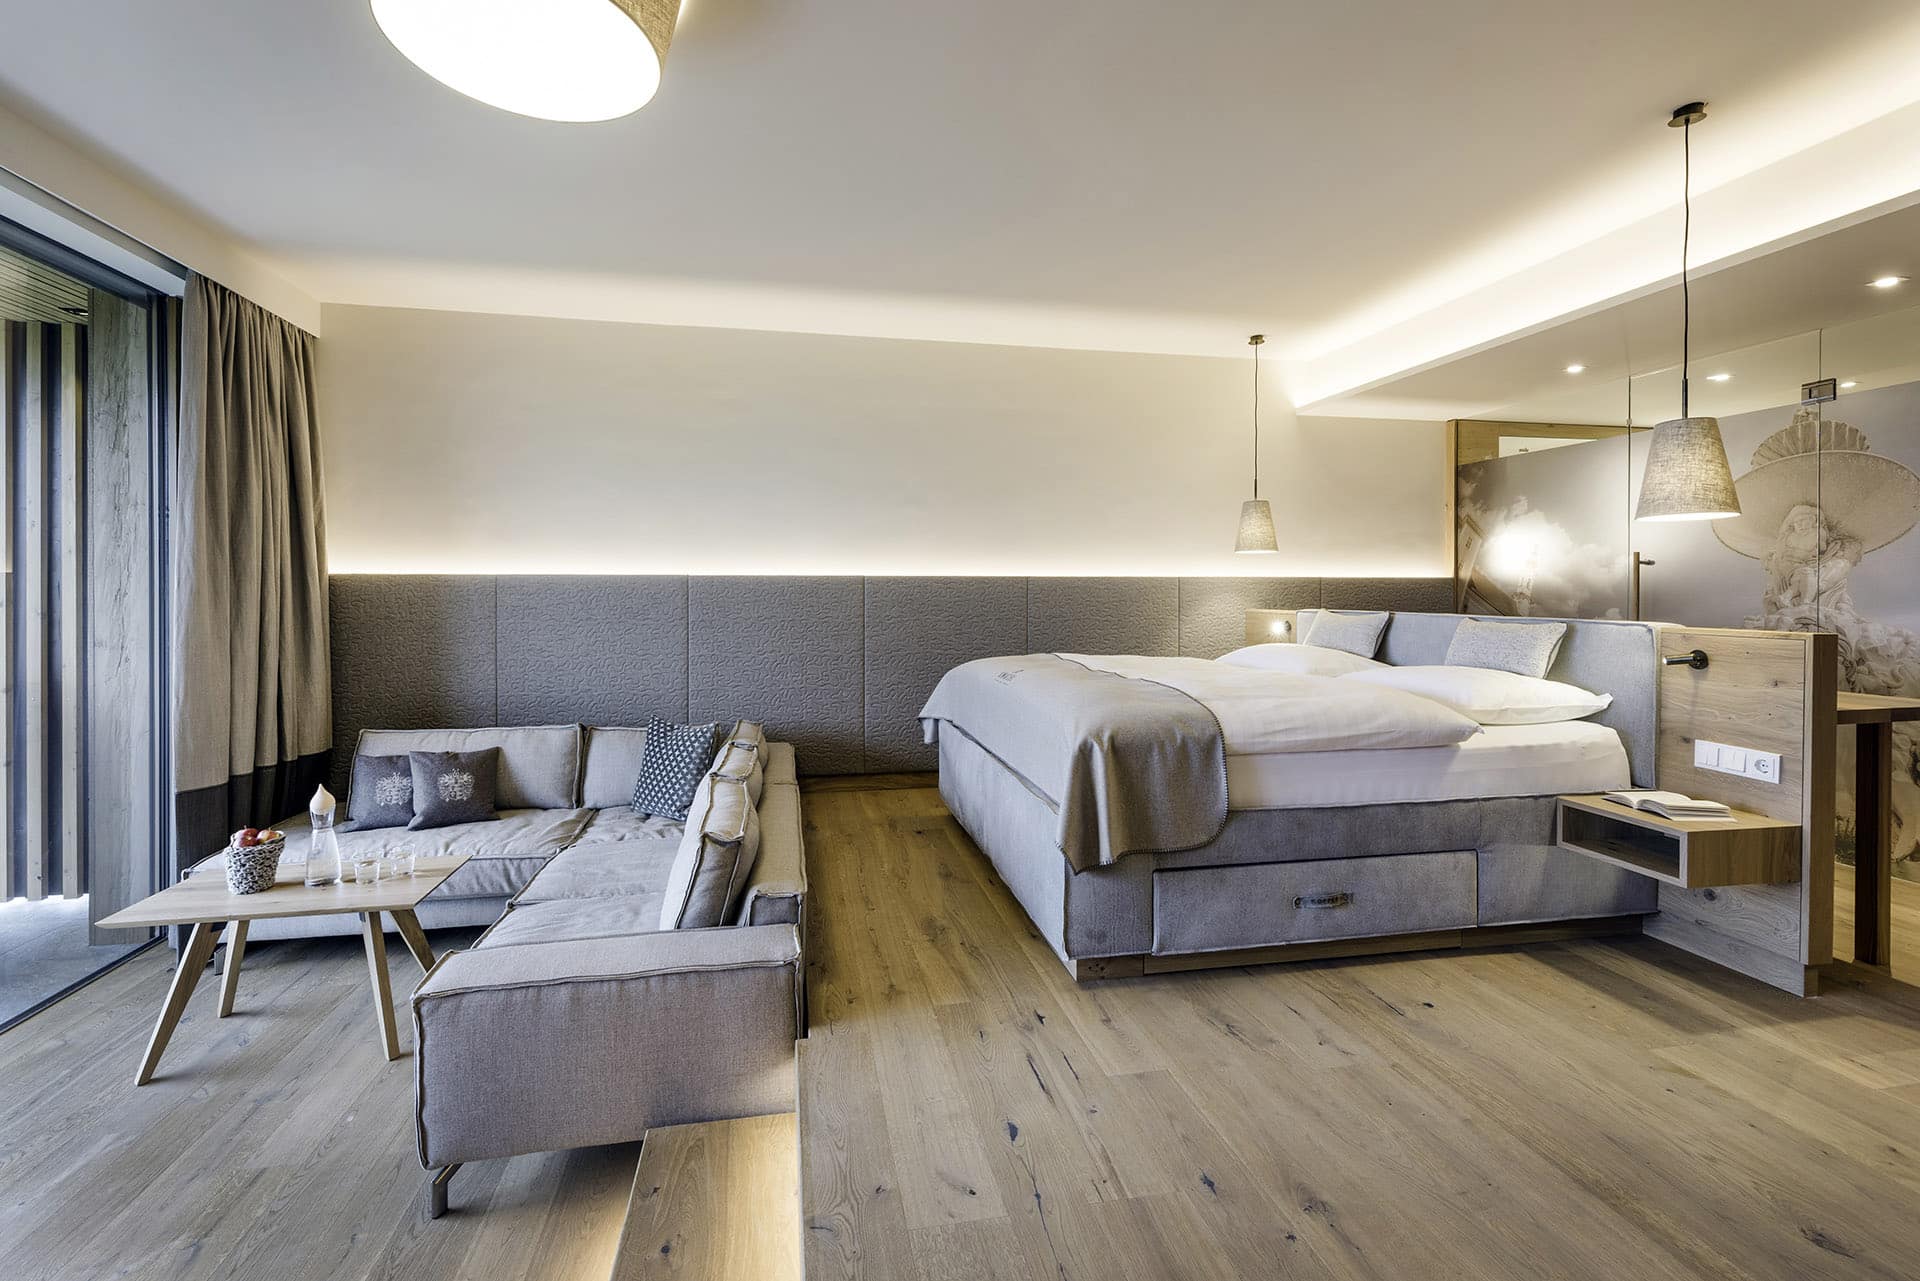 Elegantes Hotelzimmer im Genussdorf Gmachl mit Boxspringbett und gemütlicher Couch von sedda Polstermöbelwerke.